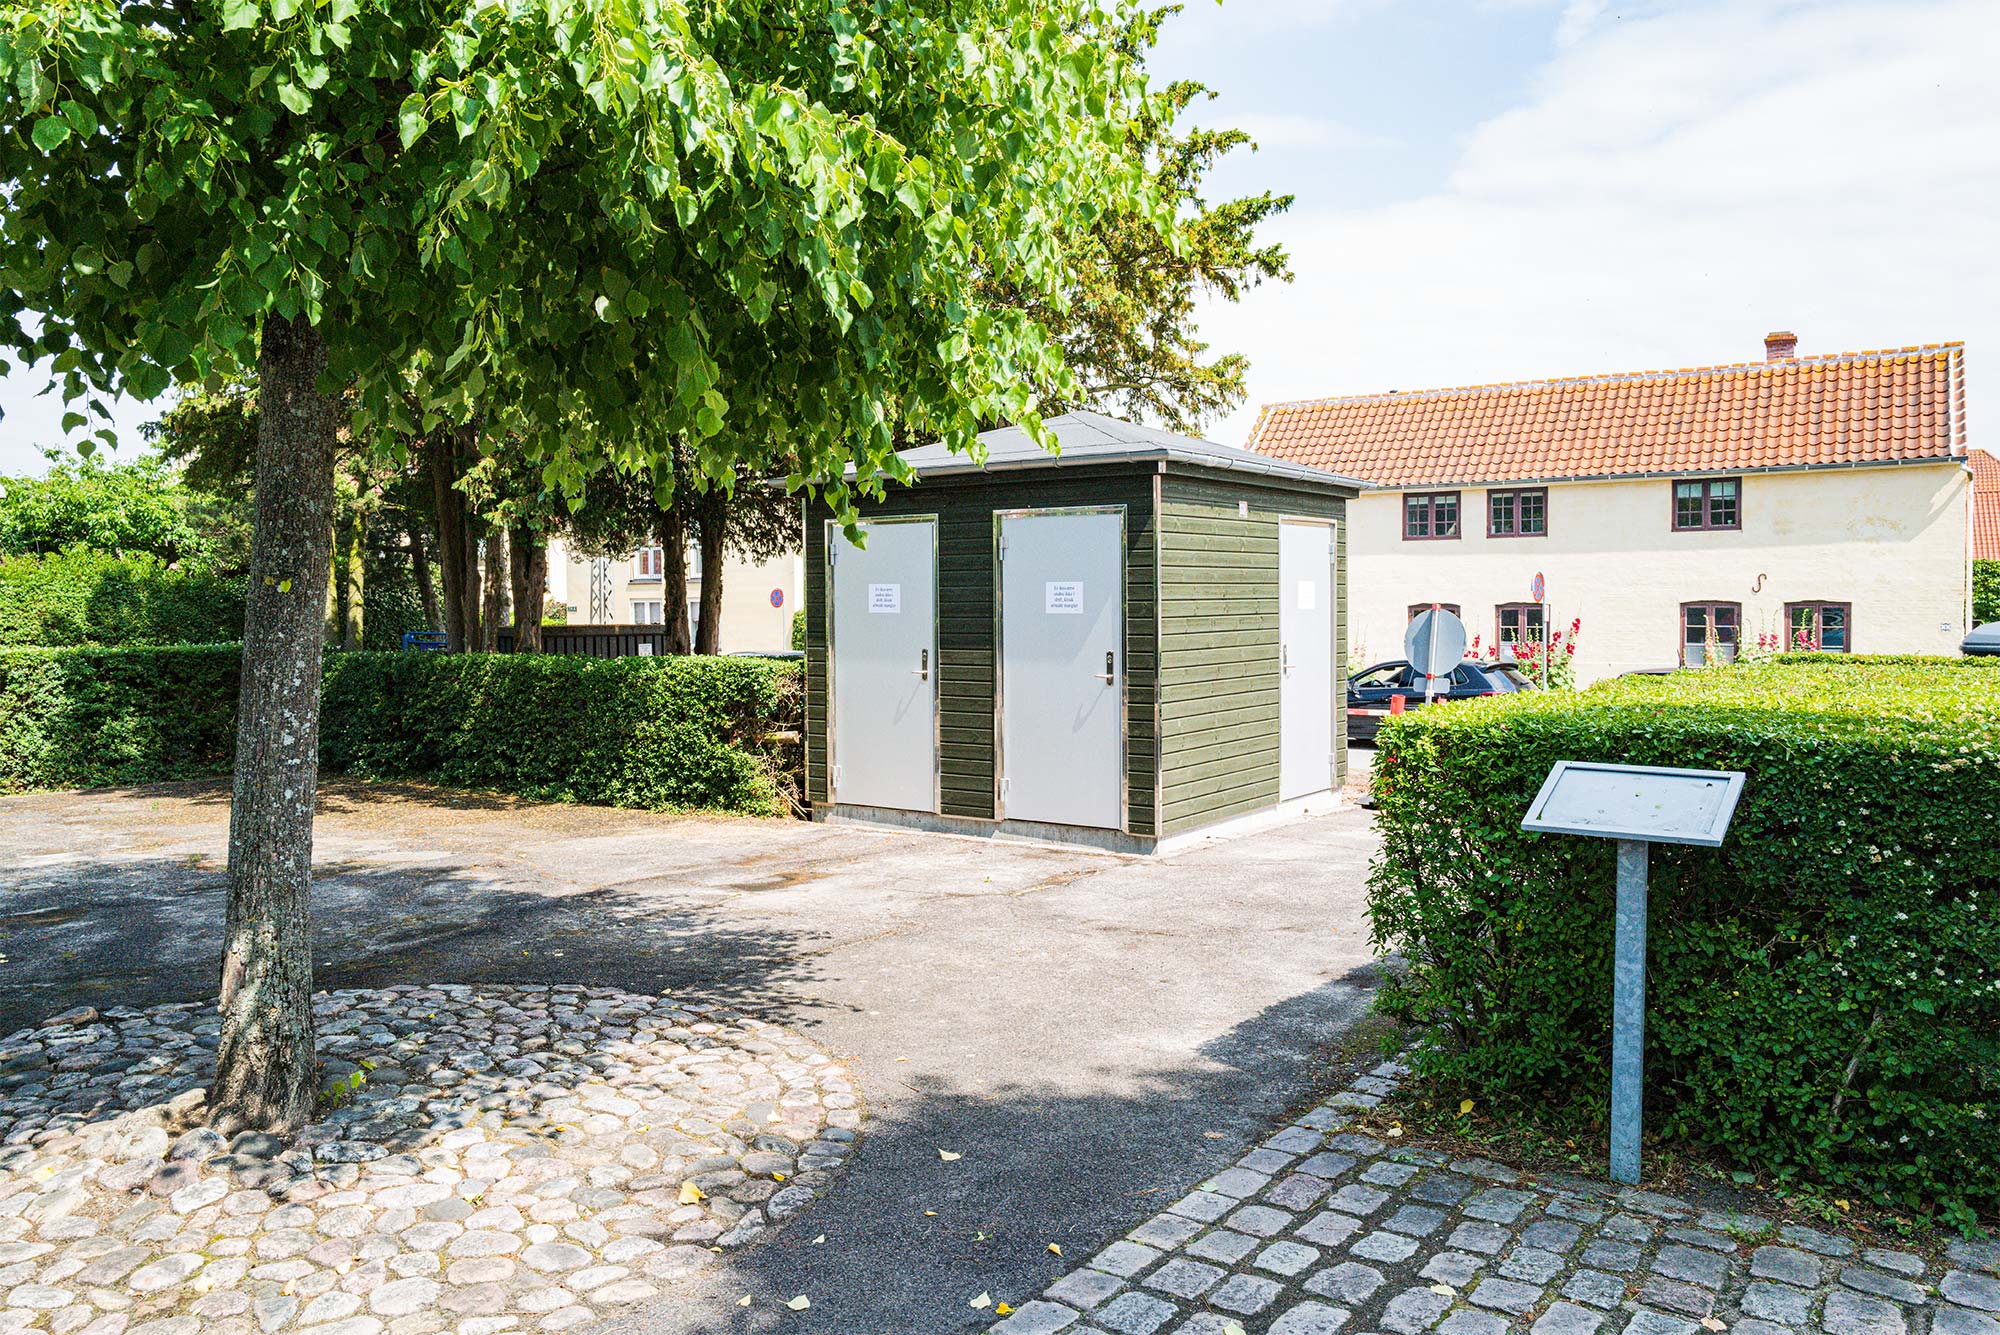 Efter mange års tilløb kom der i sidste uge flere offentlige toiletter i Drag­ør Kommune. Her blev denne toiletbygning nemlig opsat på Nordre Væl. Foto: TorbenStender.